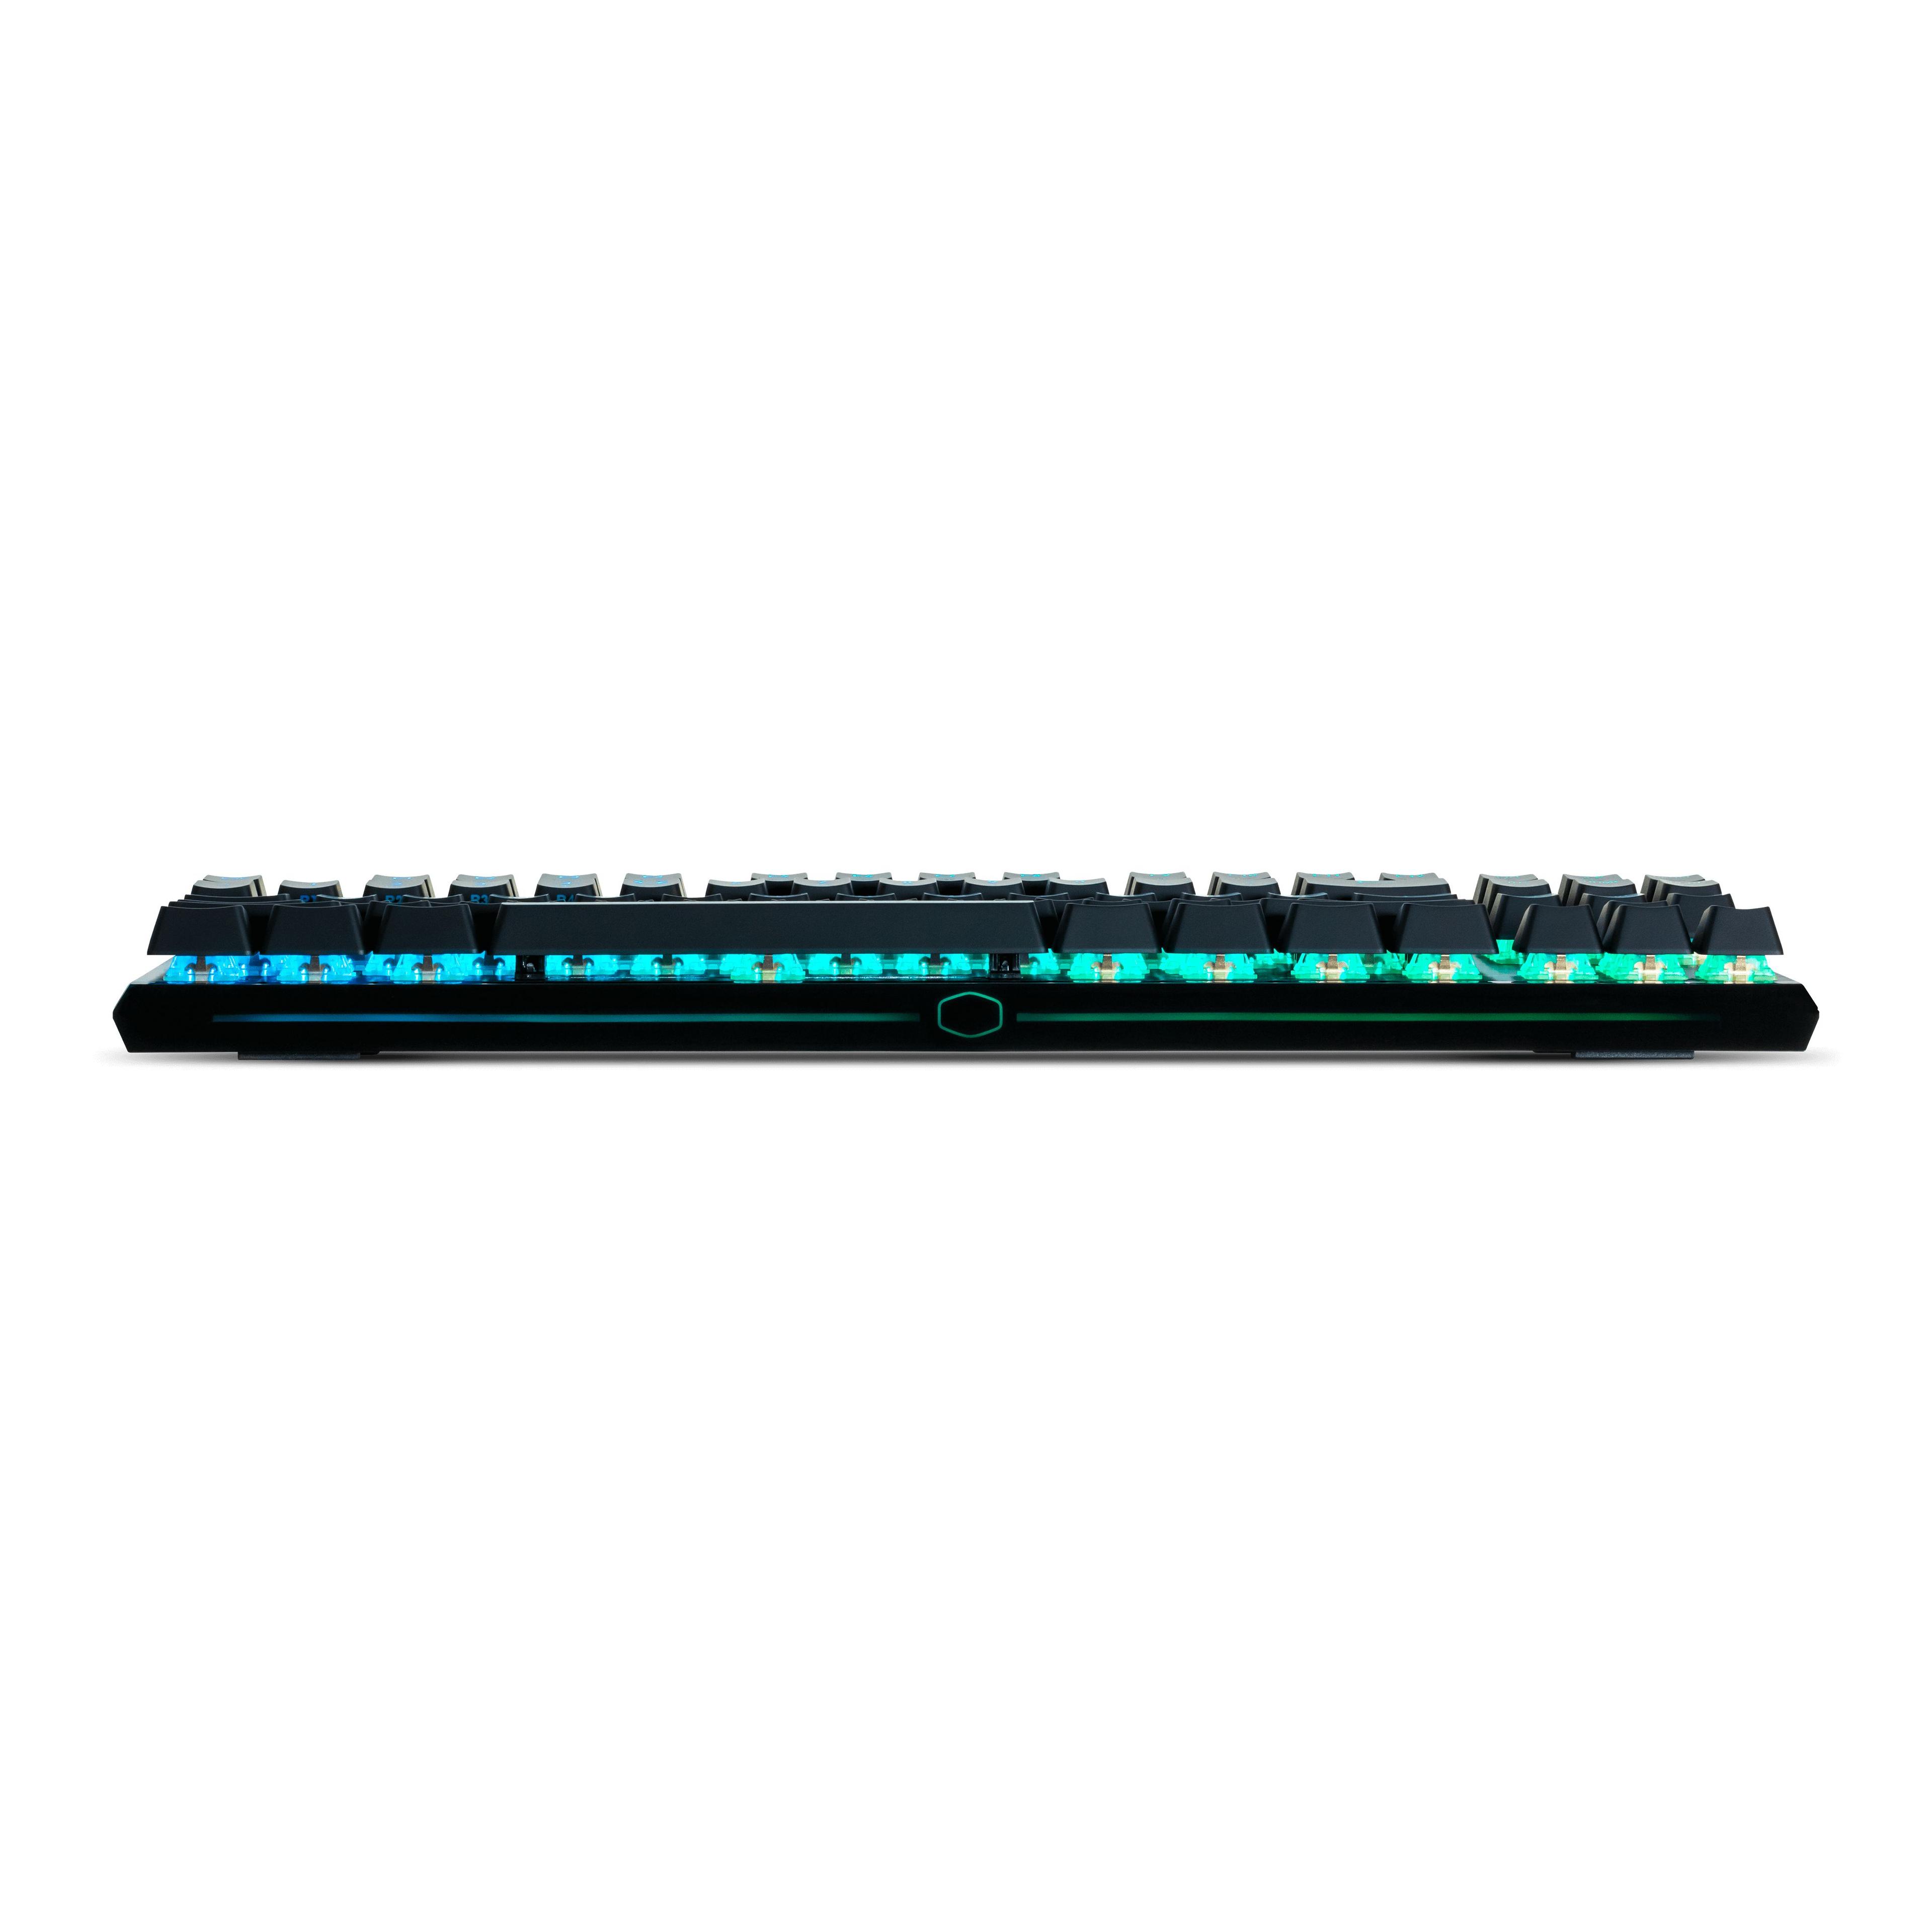 Cooler Master Gaming MK730 keyboard USB QWERTY US English Black